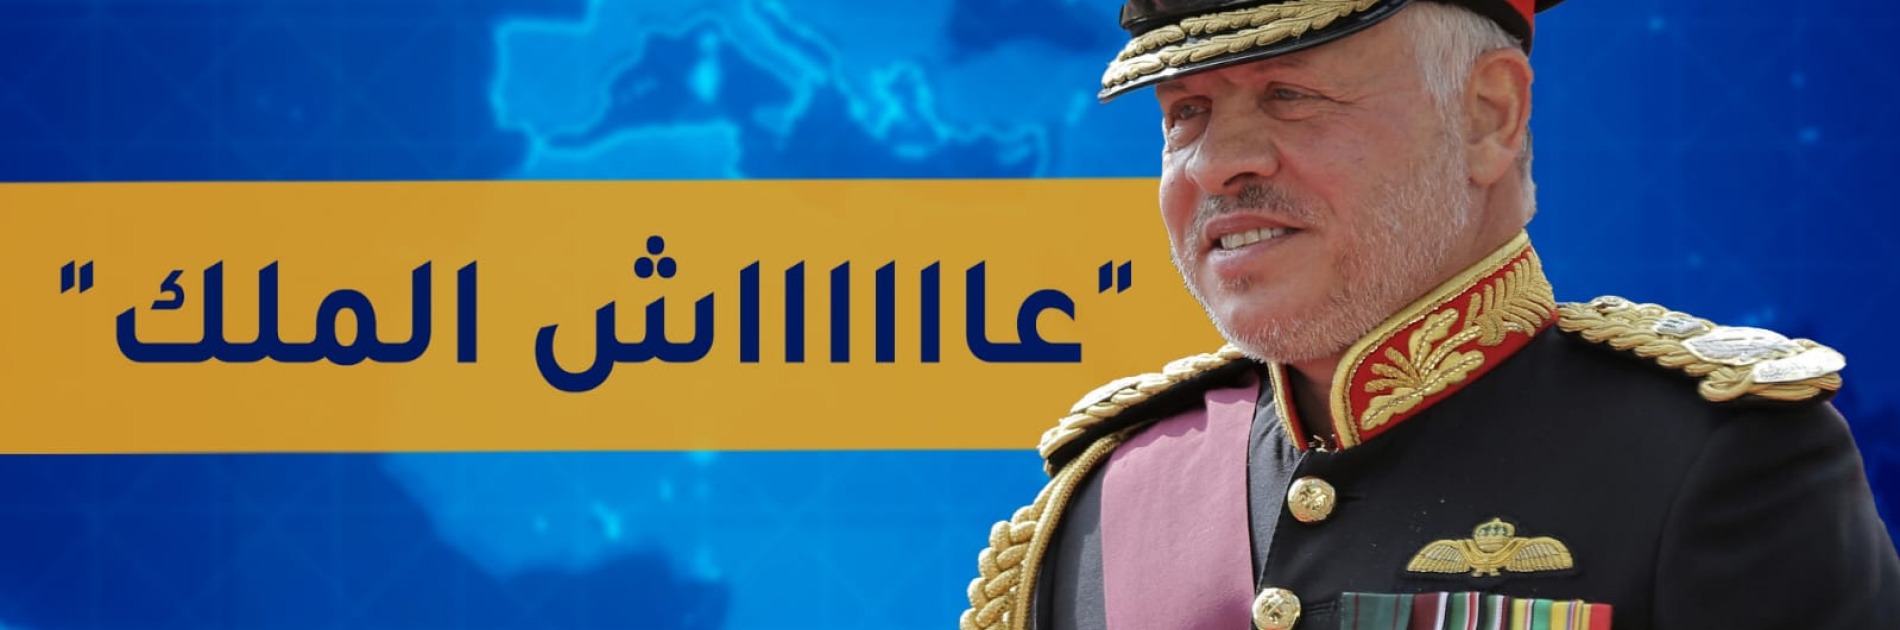 صلاحيات مطلقة للملك الأردني و"انقلاب" دستوري.. ماذا يحدث؟